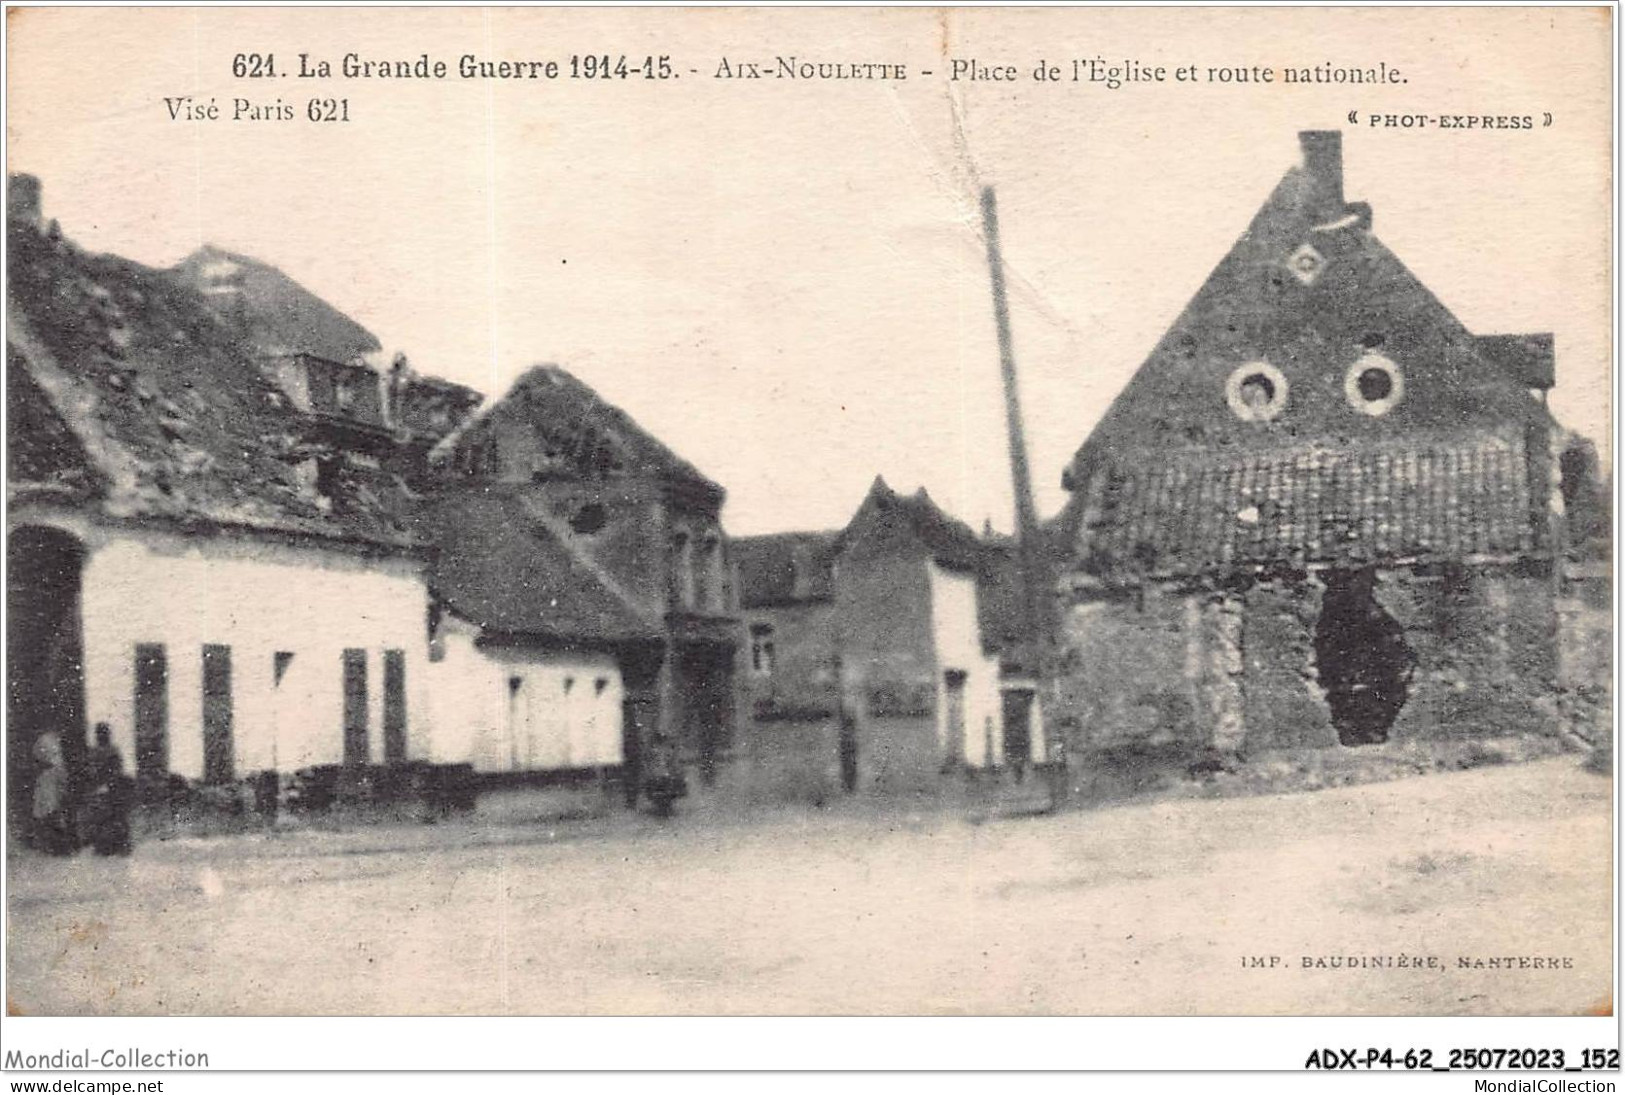 ADXP4-62-0363 - AIX-NOULETTE - LA GUERRE 1914-1915 - Place De L'église Et Route Nationale - Lens